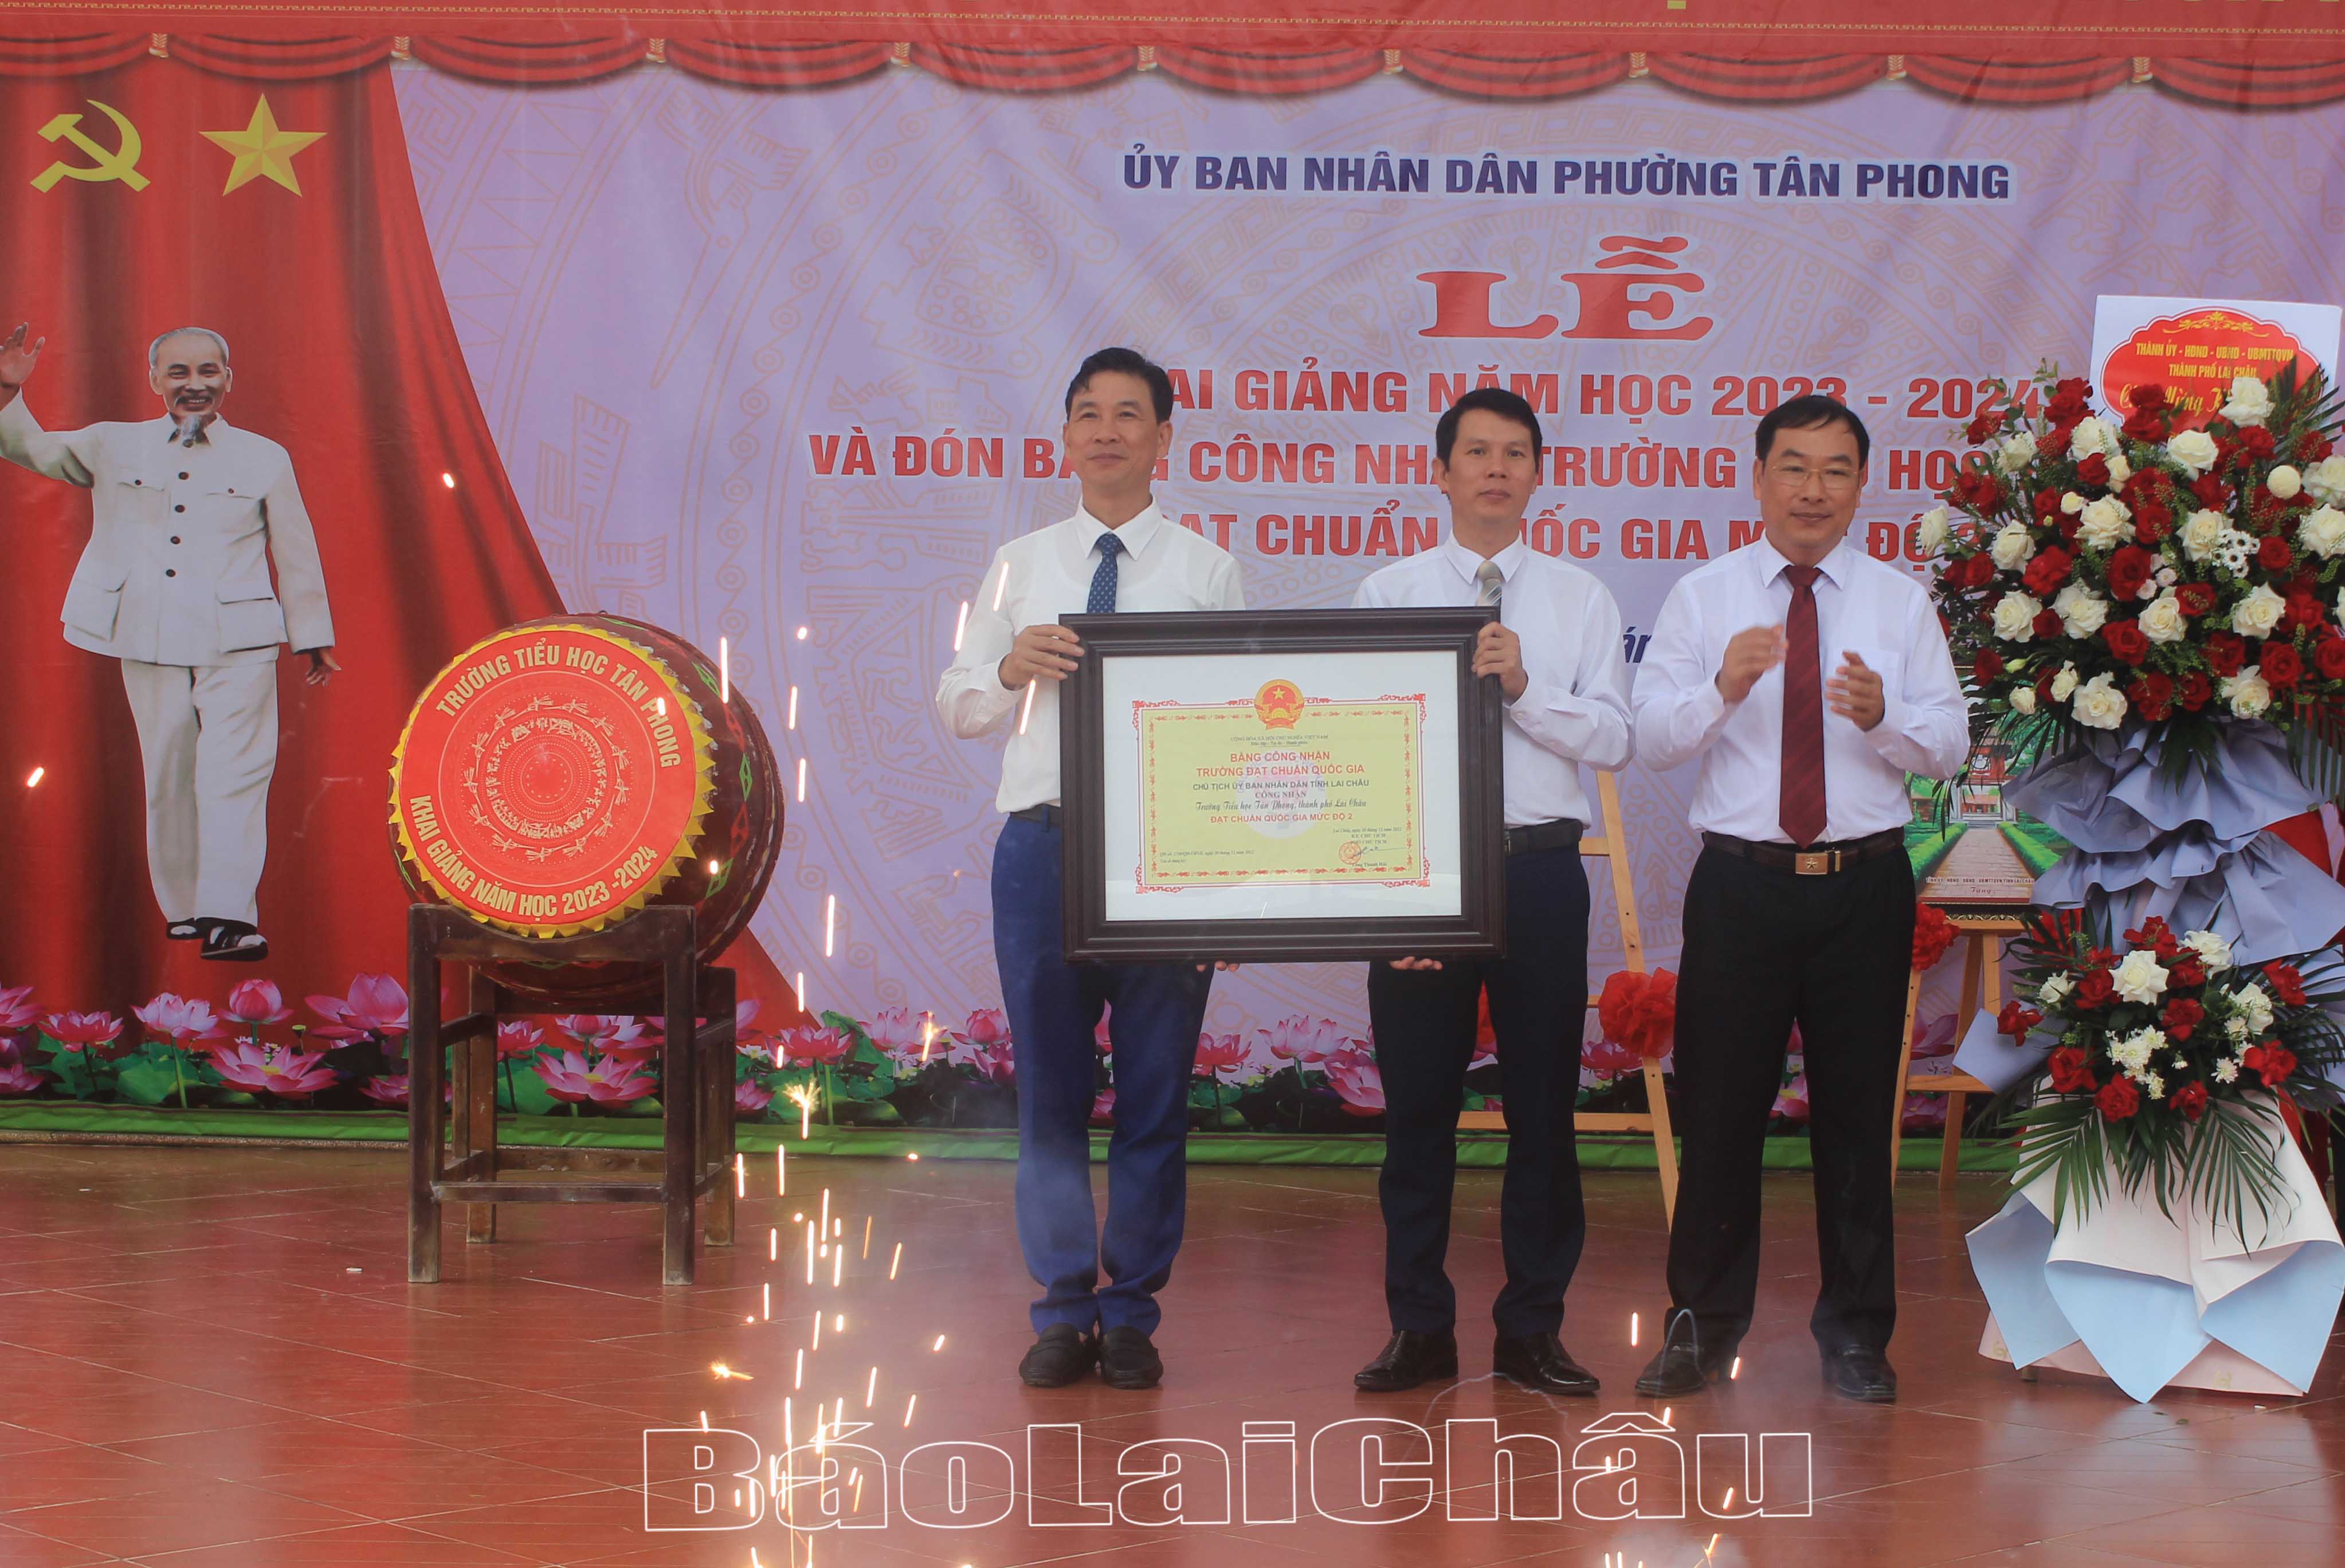 Đồng chí Tống Thanh Bình - Ủy viên Ban Thường vụ Tỉnh ủy, Bí thư Thành ủy Lai Châu trao Bằng công nhận Trường Tiểu học đạt chuẩn Quốc gia mức độ 2 cho Trường Tiểu học Tân Phong (thành phố Lai Châu).